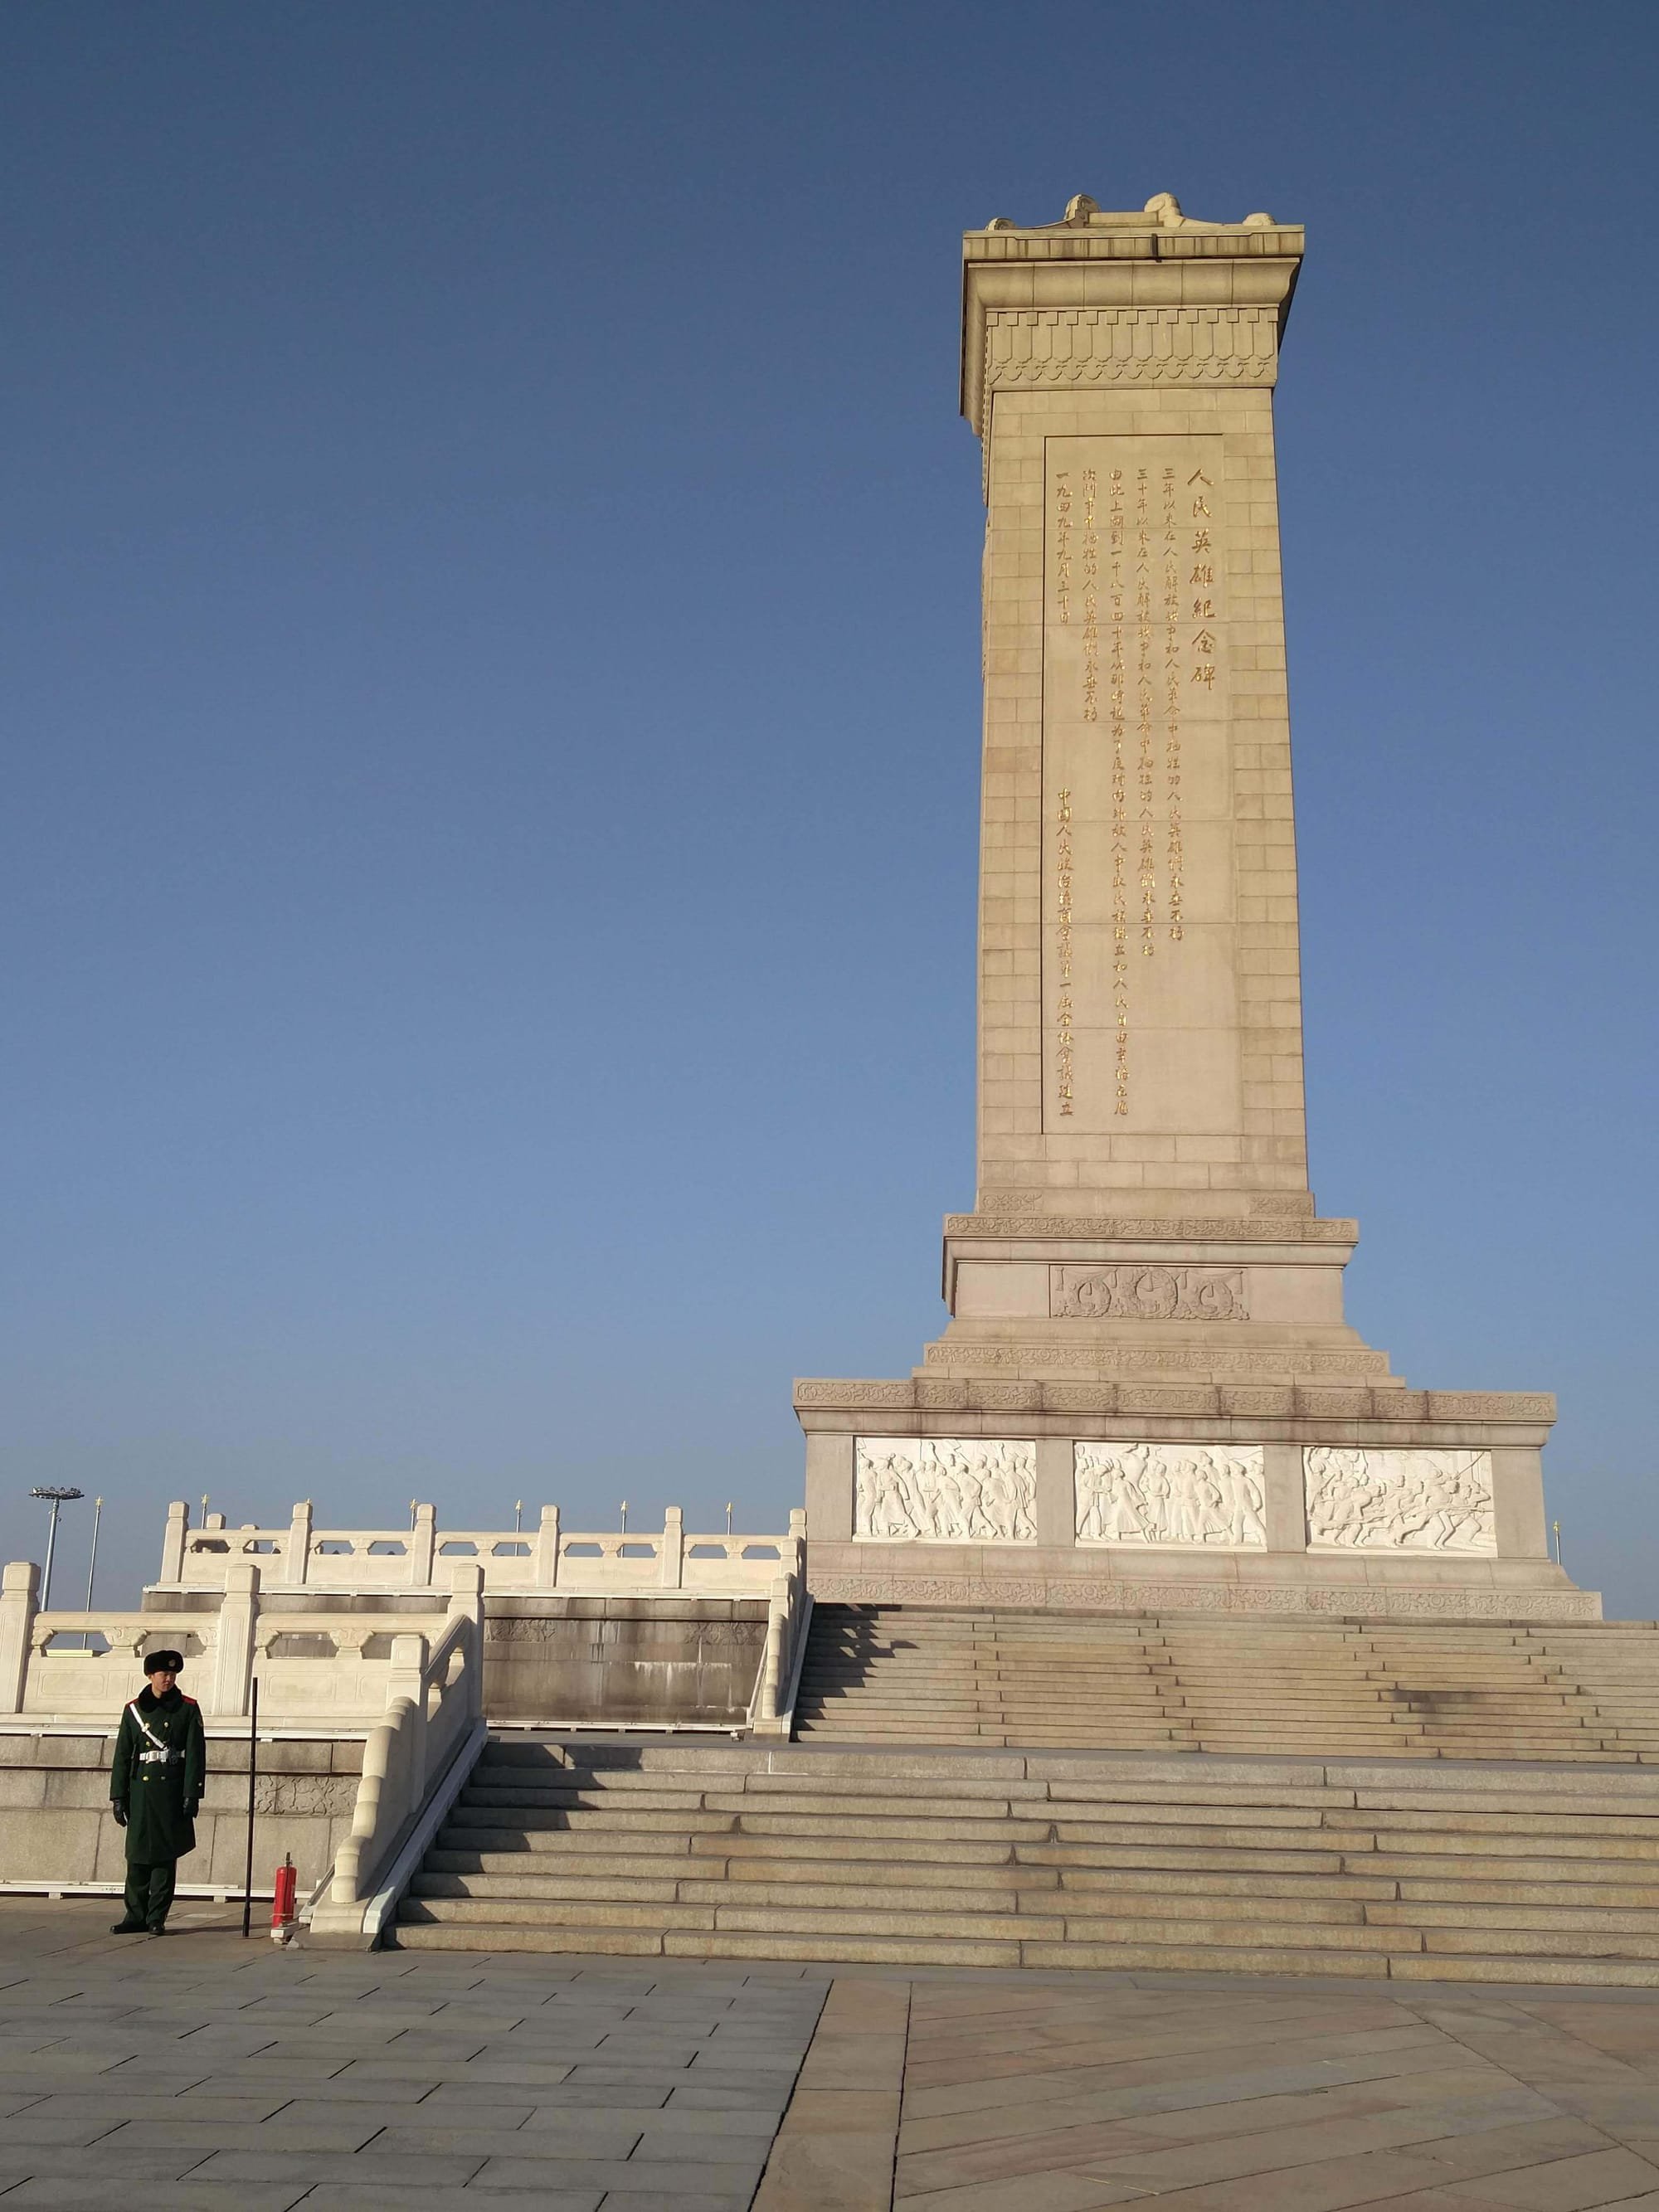 רוית רדיאן, בין ים ושמיים, כיכר טיינאנמן, אנדרטה לגיבורי העם, בייג'ין, אימון